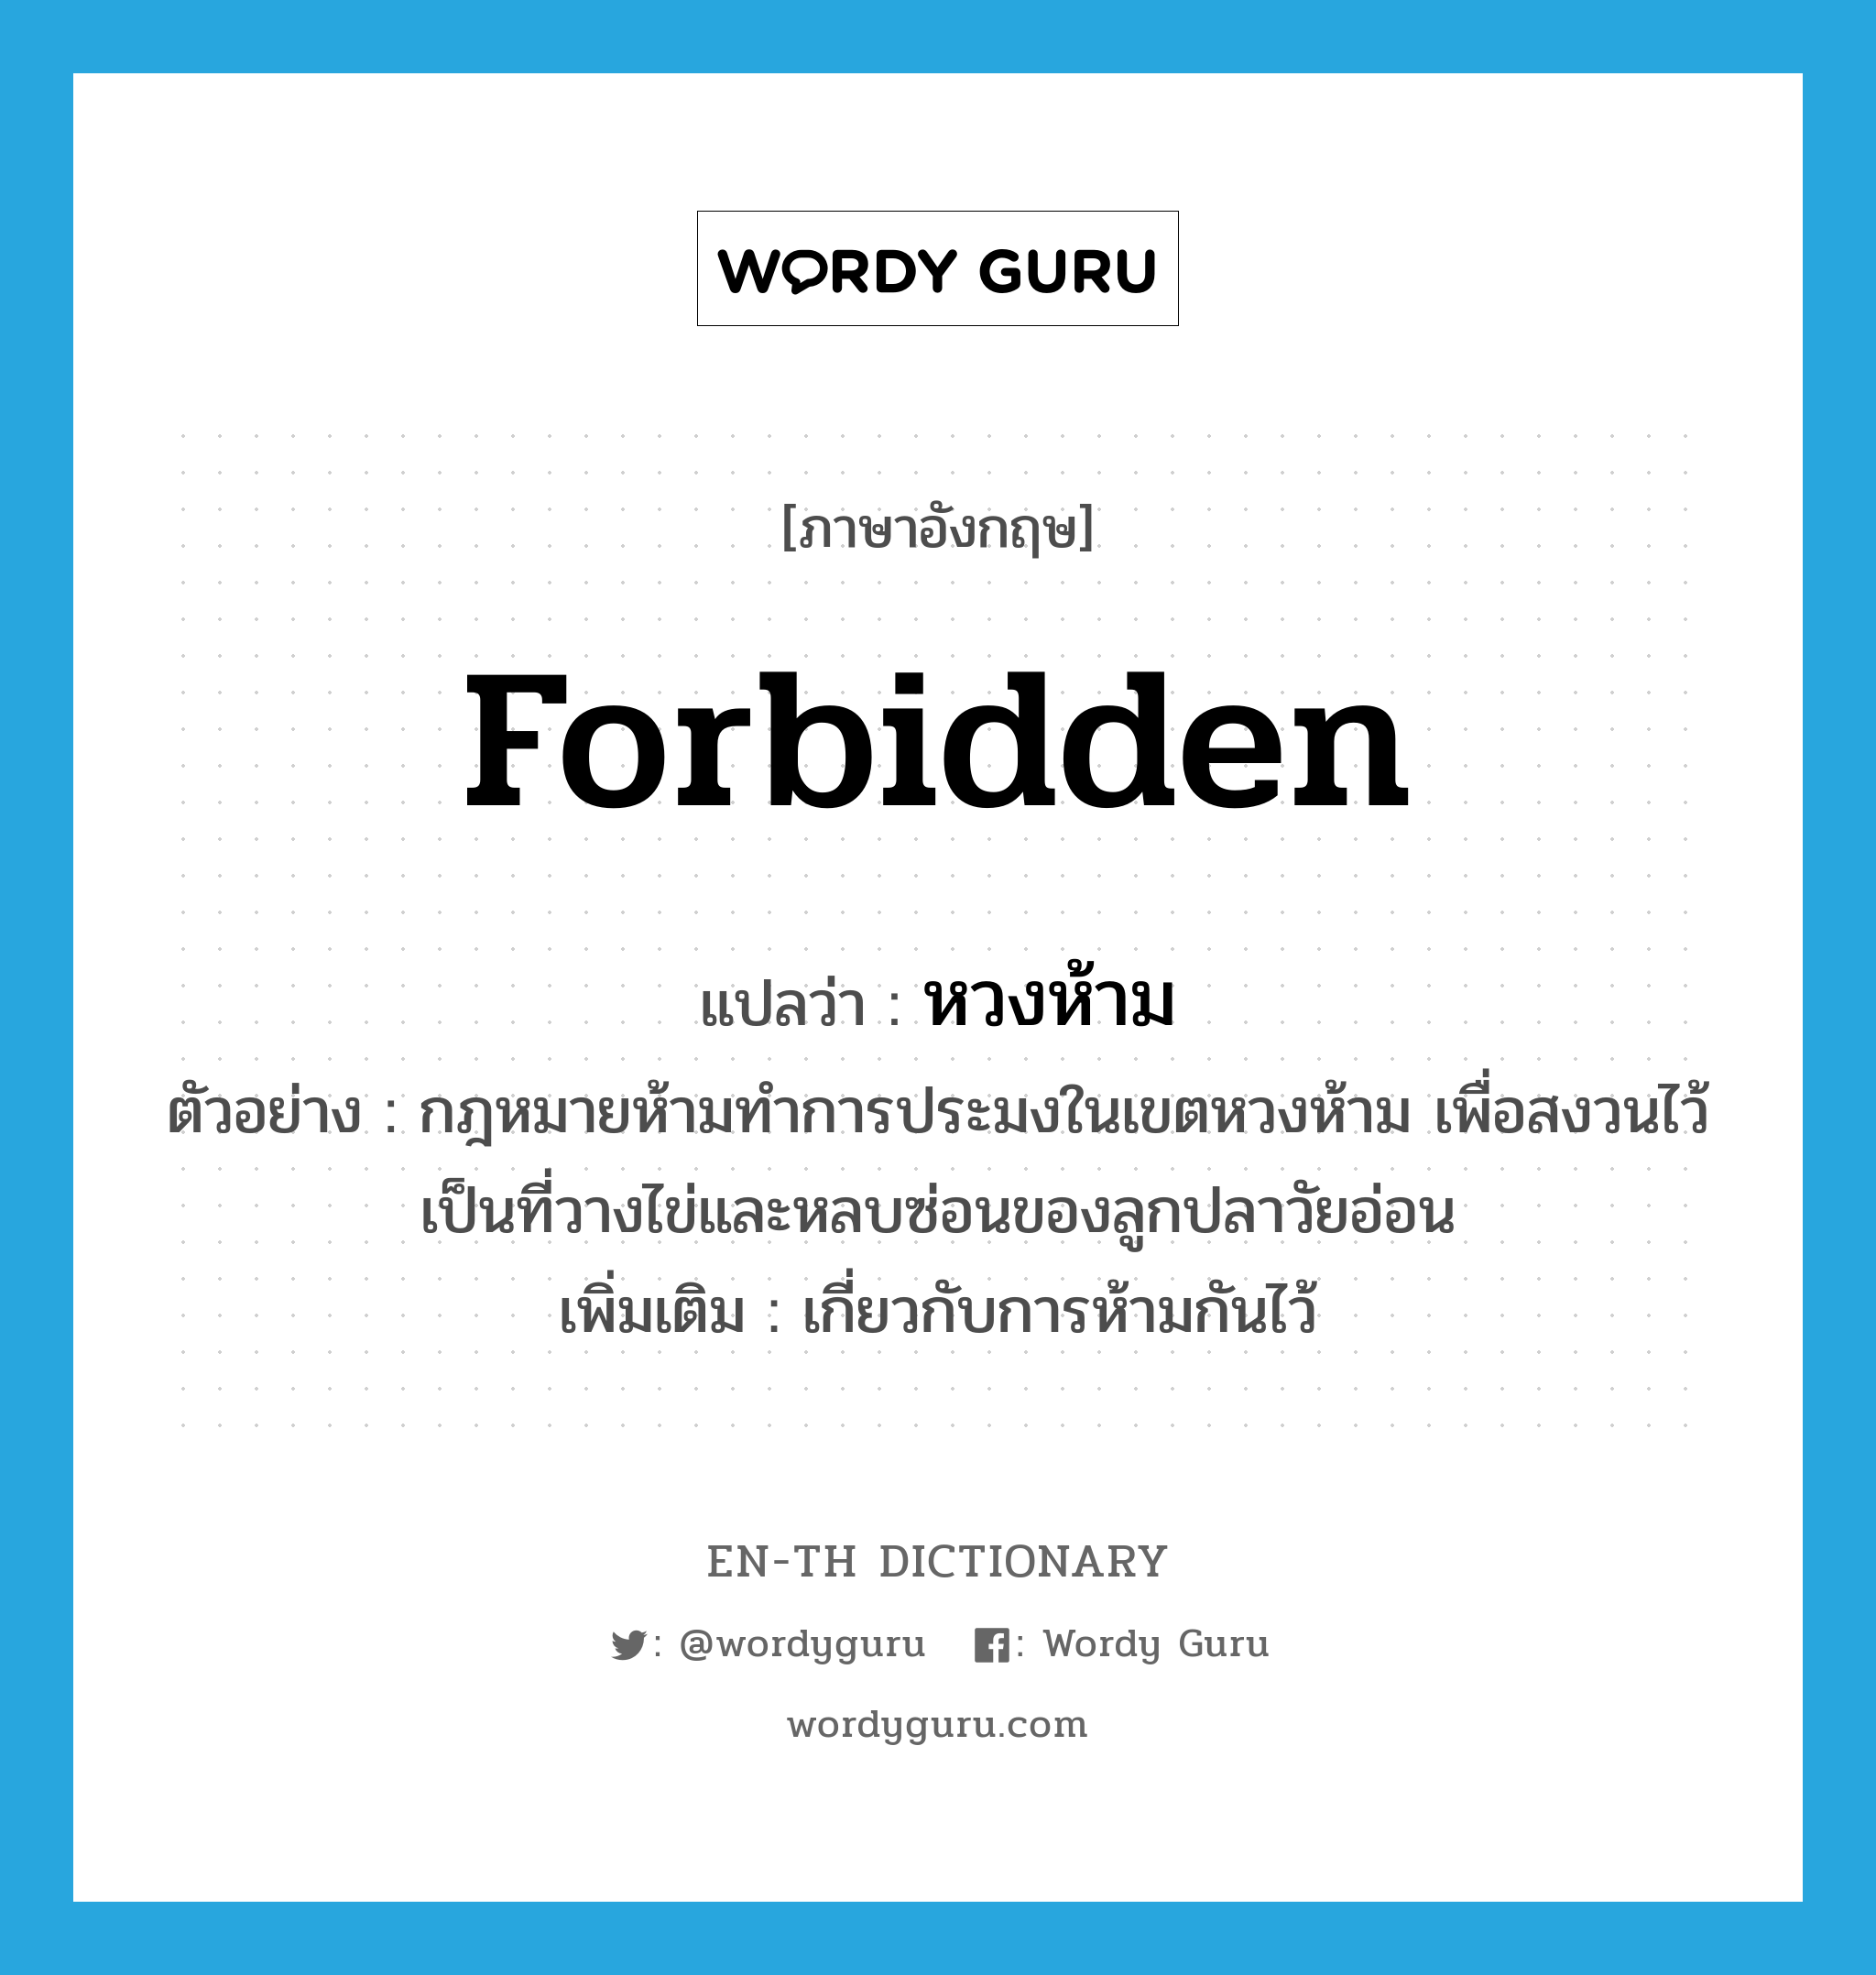 forbidden แปลว่า?, คำศัพท์ภาษาอังกฤษ forbidden แปลว่า หวงห้าม ประเภท ADJ ตัวอย่าง กฎหมายห้ามทำการประมงในเขตหวงห้าม เพื่อสงวนไว้เป็นที่วางไข่และหลบซ่อนของลูกปลาวัยอ่อน เพิ่มเติม เกี่ยวกับการห้ามกันไว้ หมวด ADJ